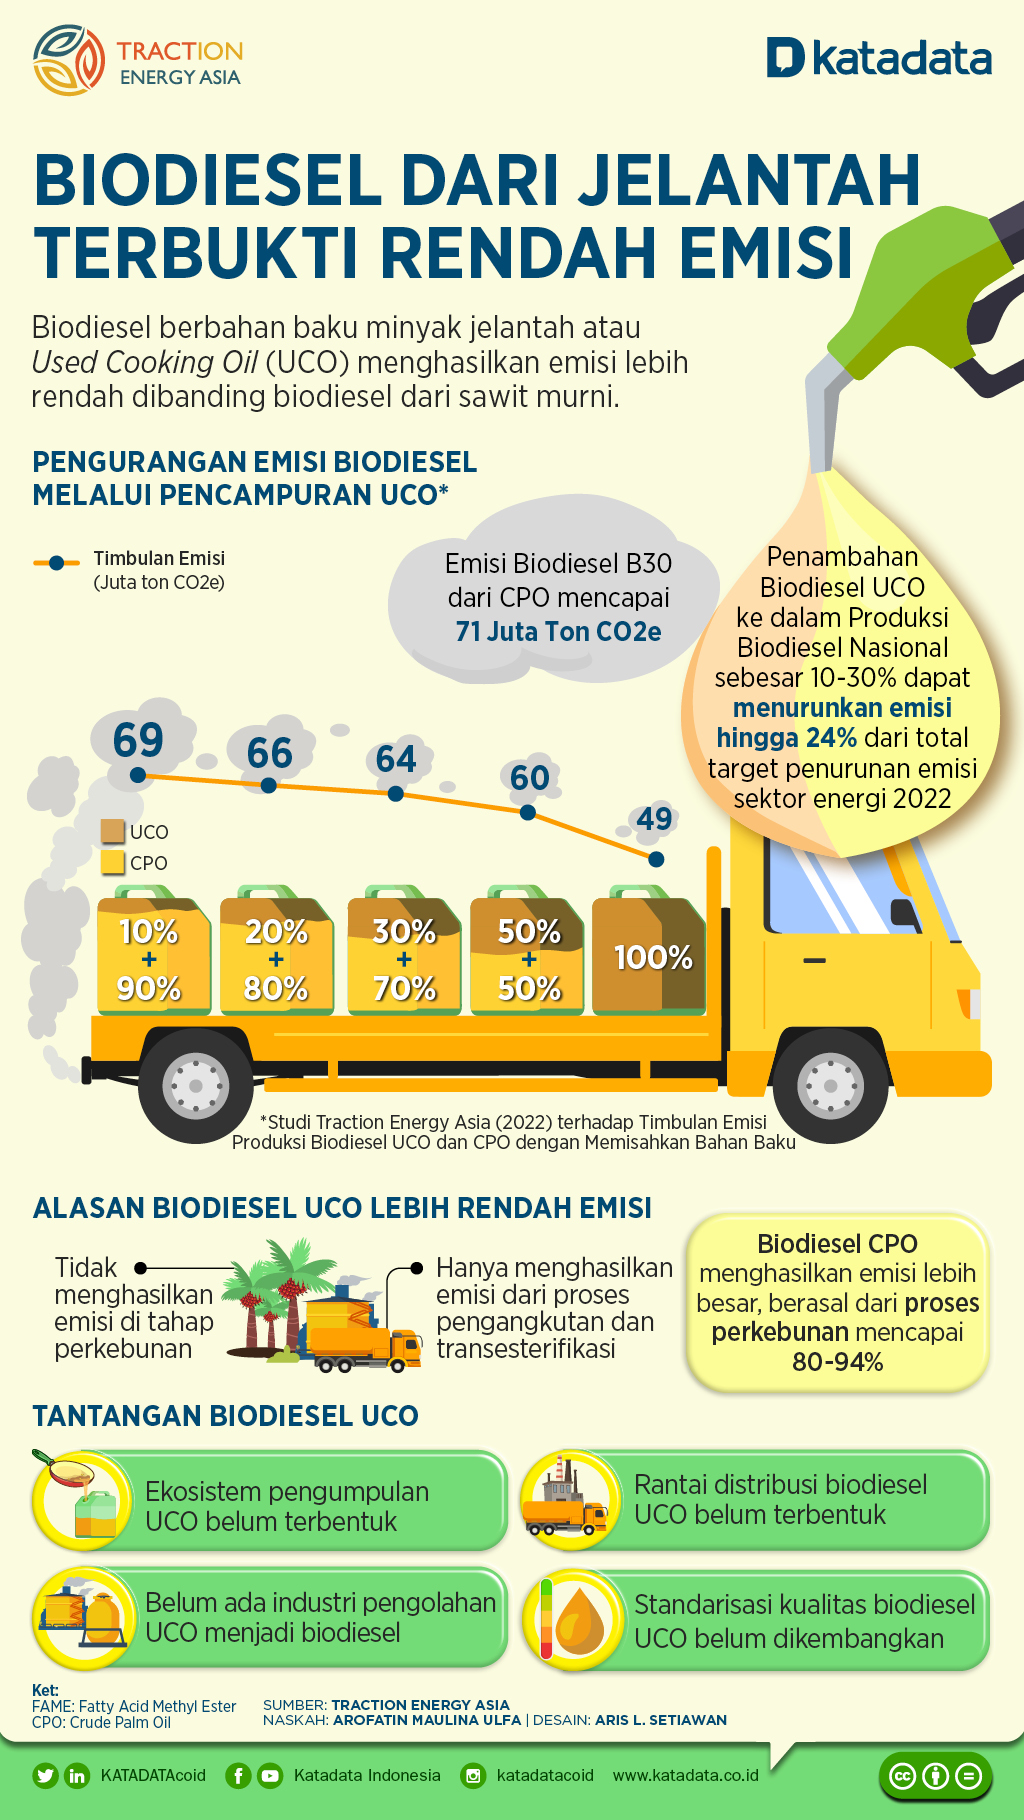 Biodiesel Dari Jelantah Terbukti Rendah Emisi